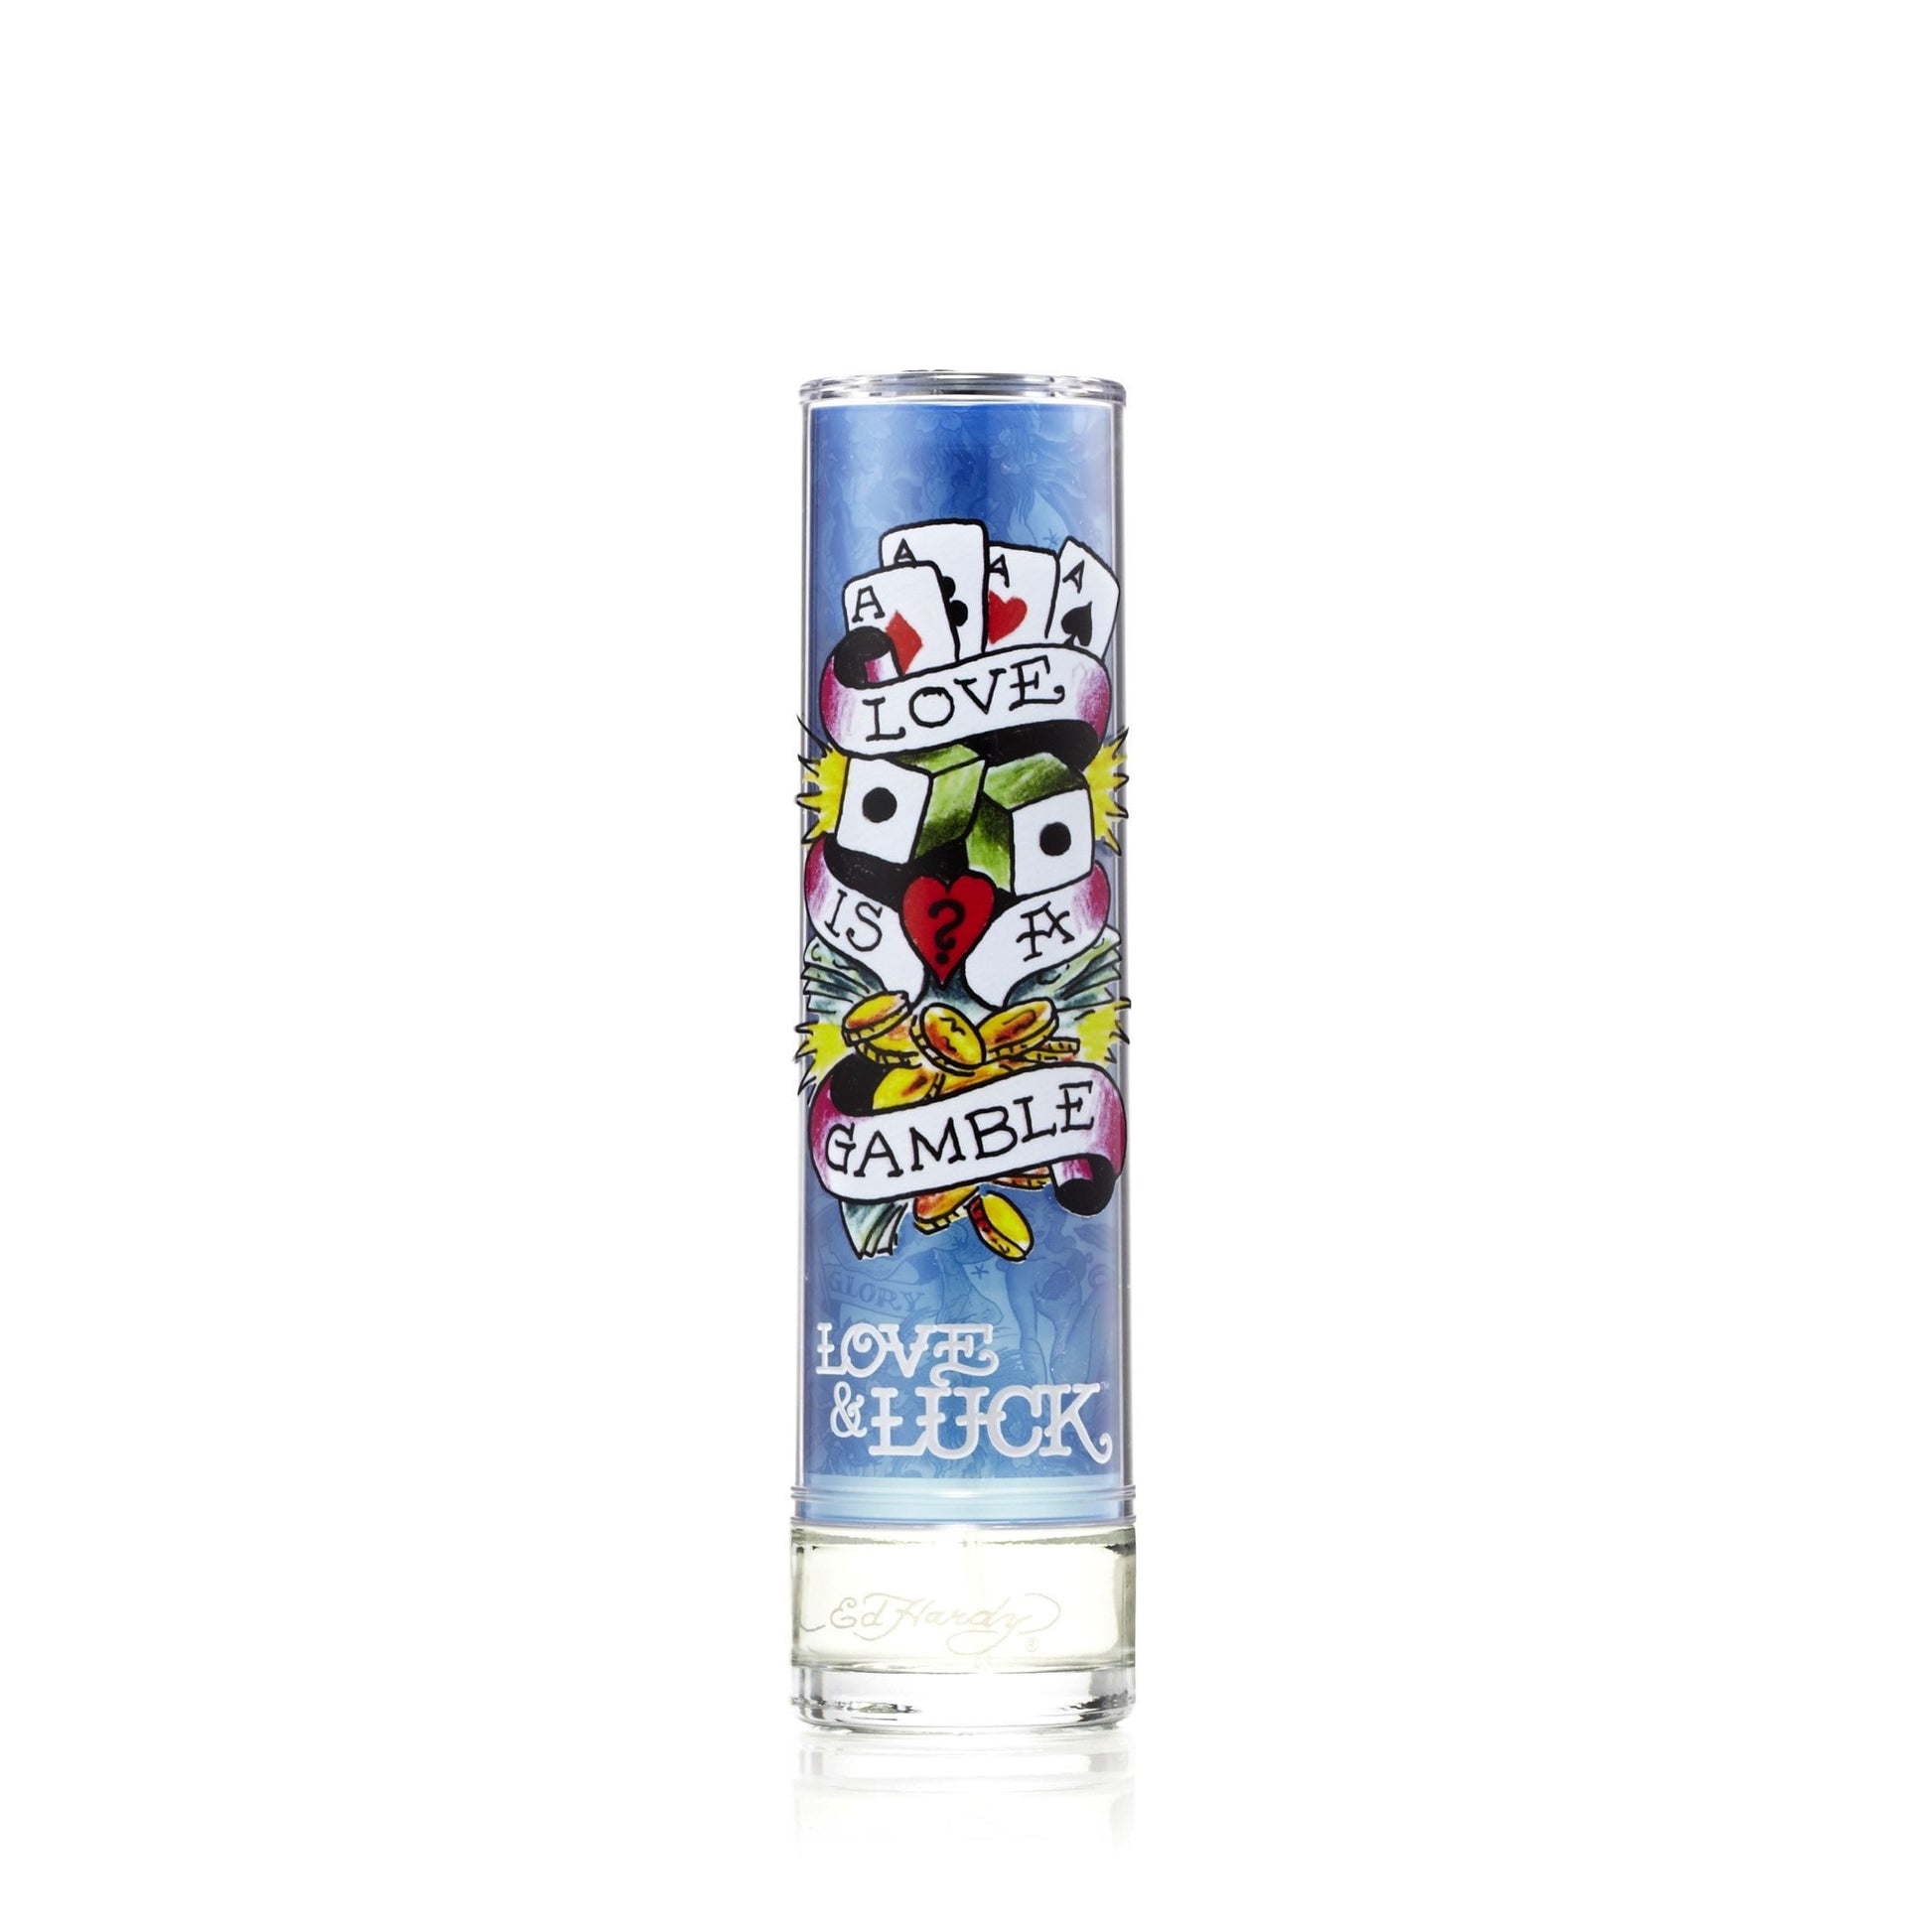 Ed Hardy Love & Luck Eau de Toilette Spray for Men by Christian Audigier 3.4 oz. Click to open in modal